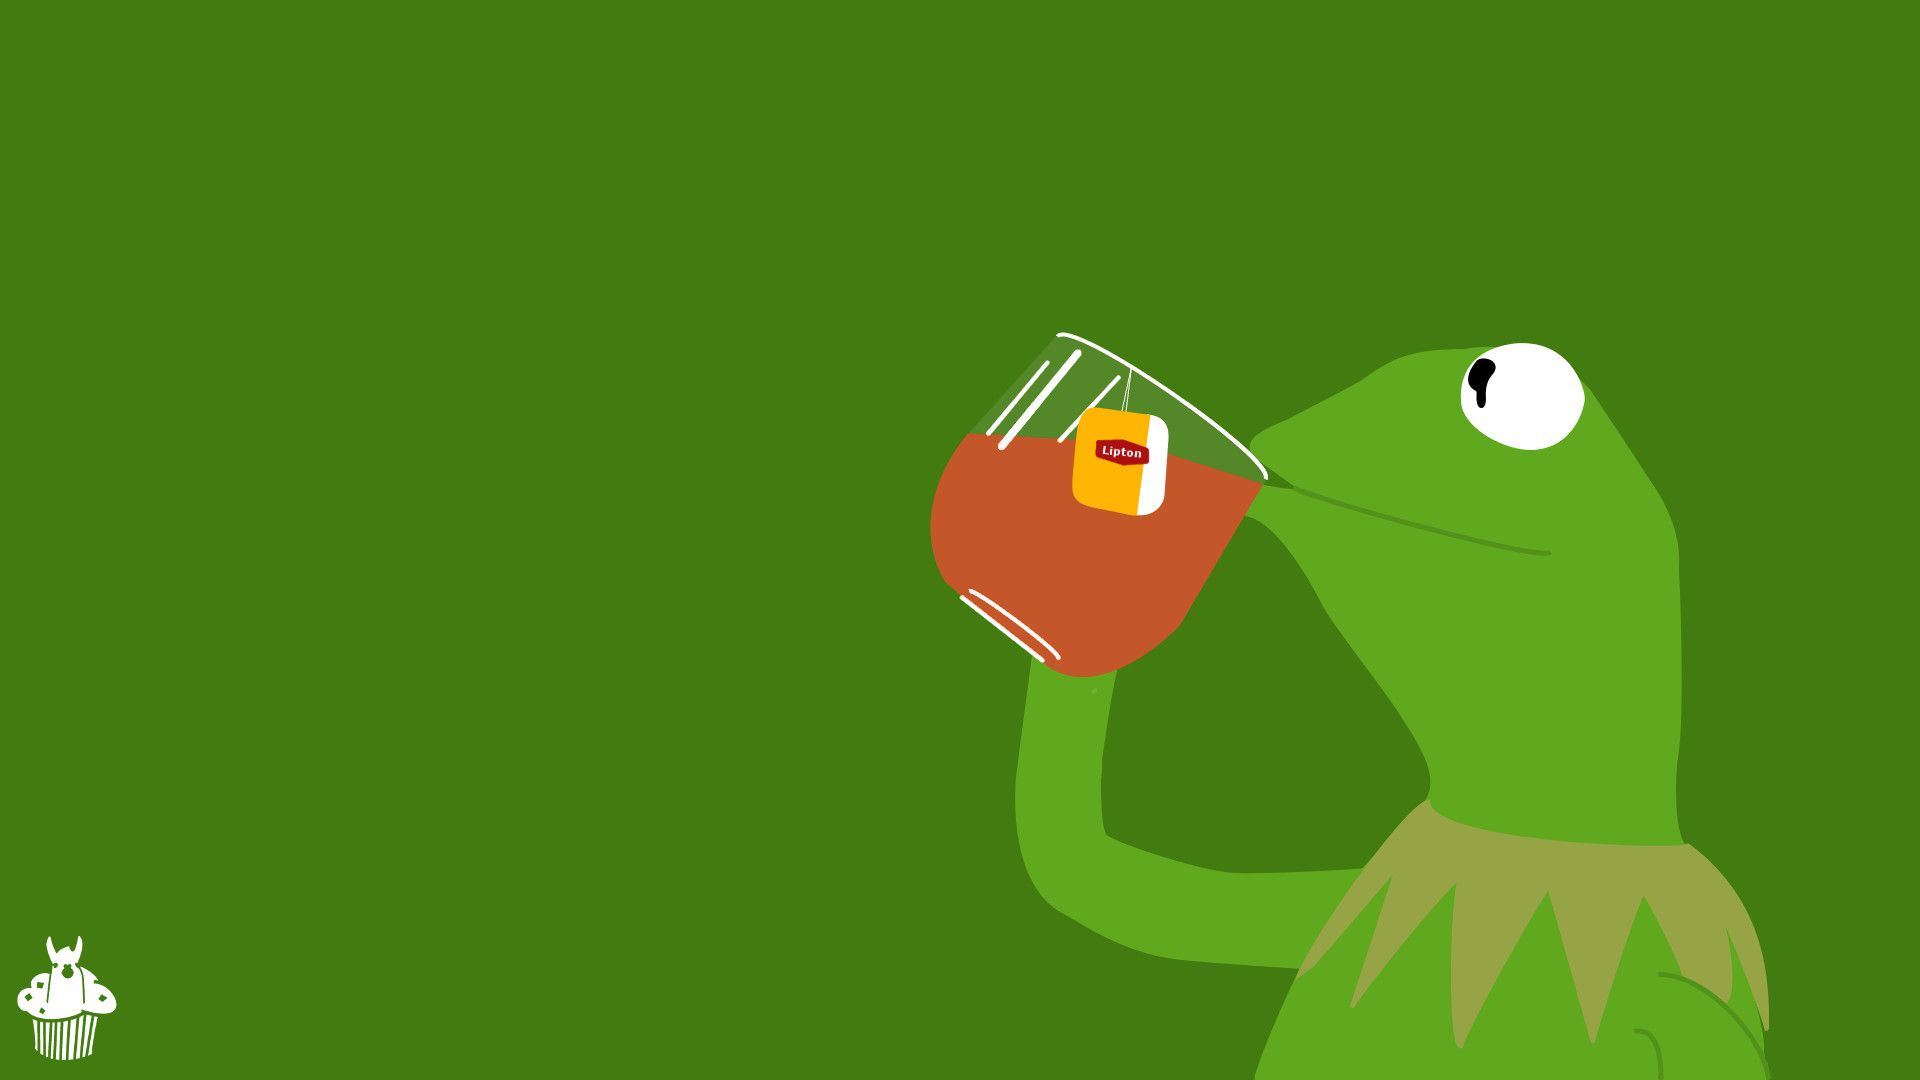 Nếu bạn yêu thích những con ếch thân thiện và vui nhộn như Kermit, hãy xem bộ sưu tập hình nền máy tính của WallpaperDog. Chất lượng hình ảnh đẹp và sắc nét sẽ giúp bạn tạo nên một không gian làm việc thú vị và tinh tế.